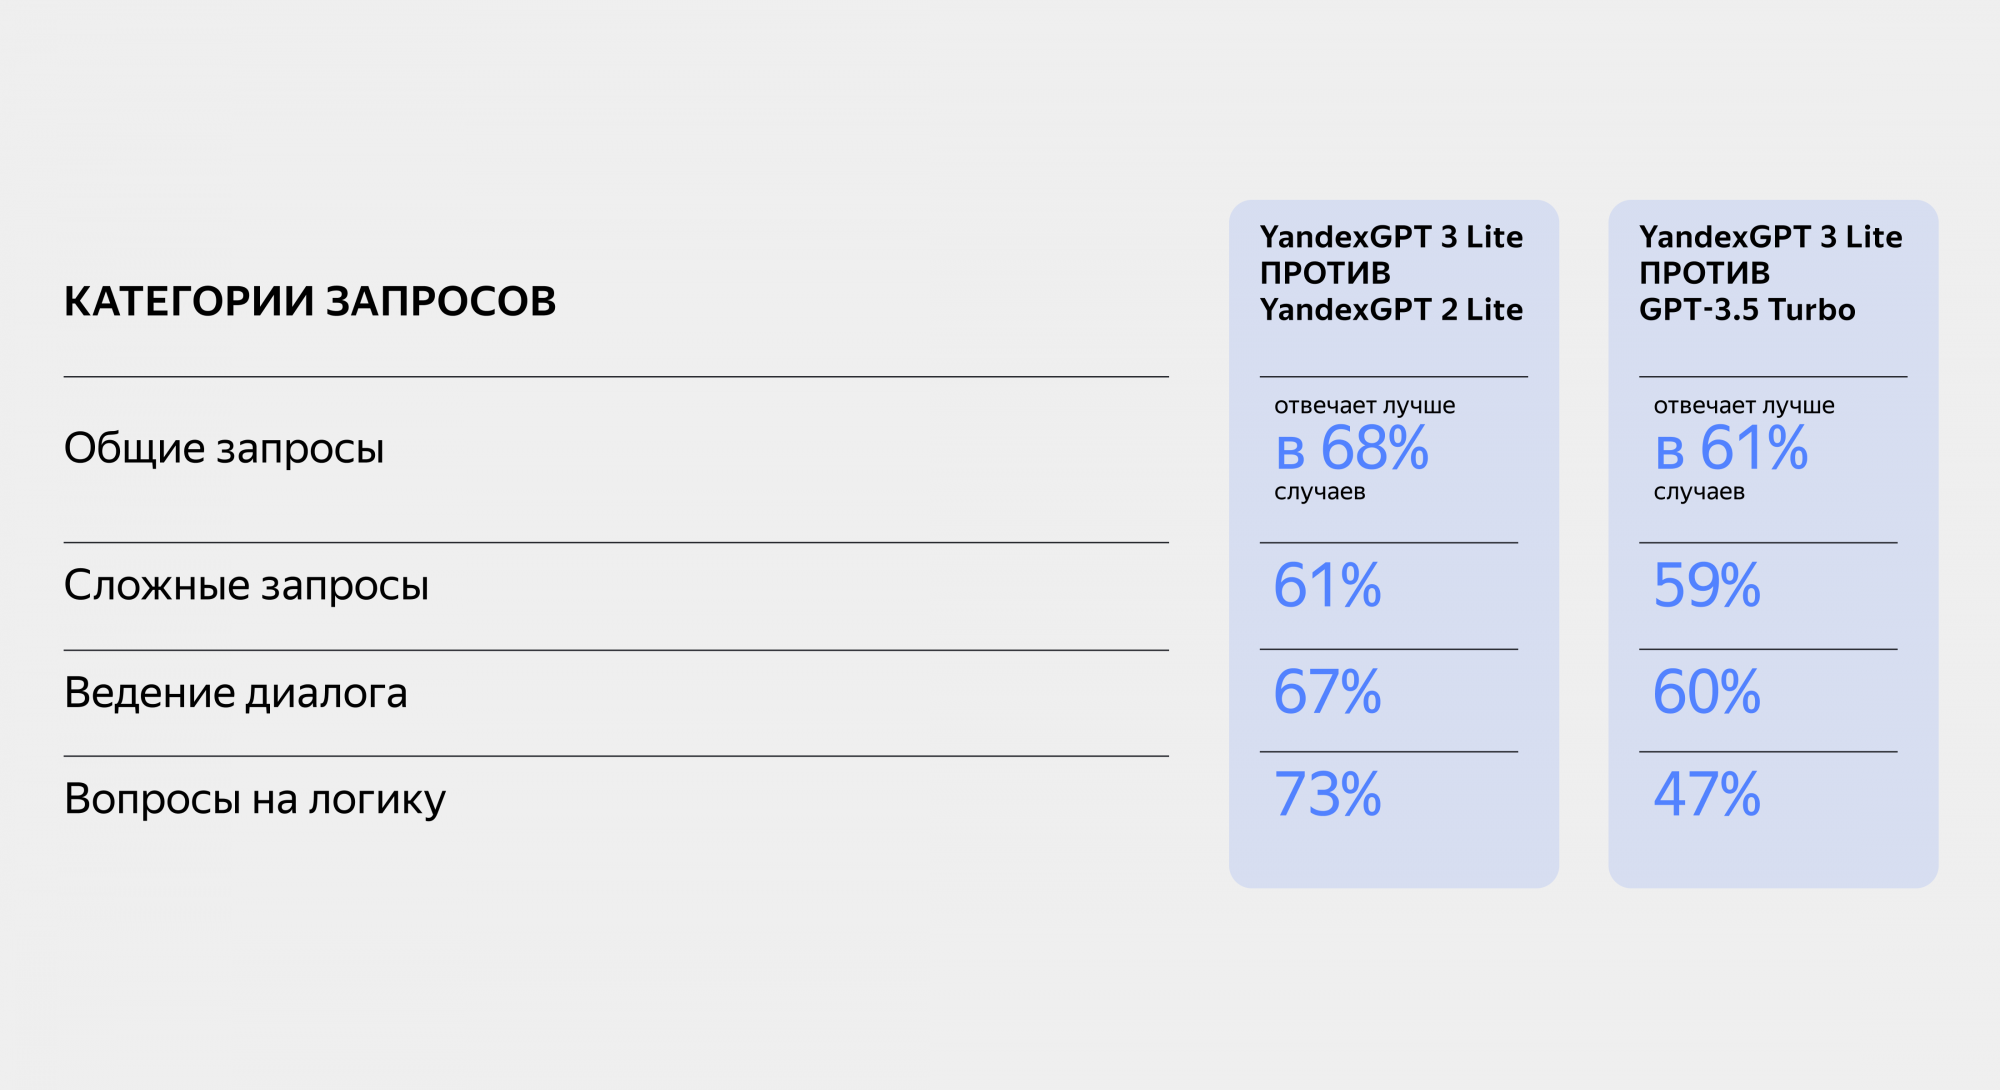 YandexGPT 3 Lite отвечала лучше в 68% случаев